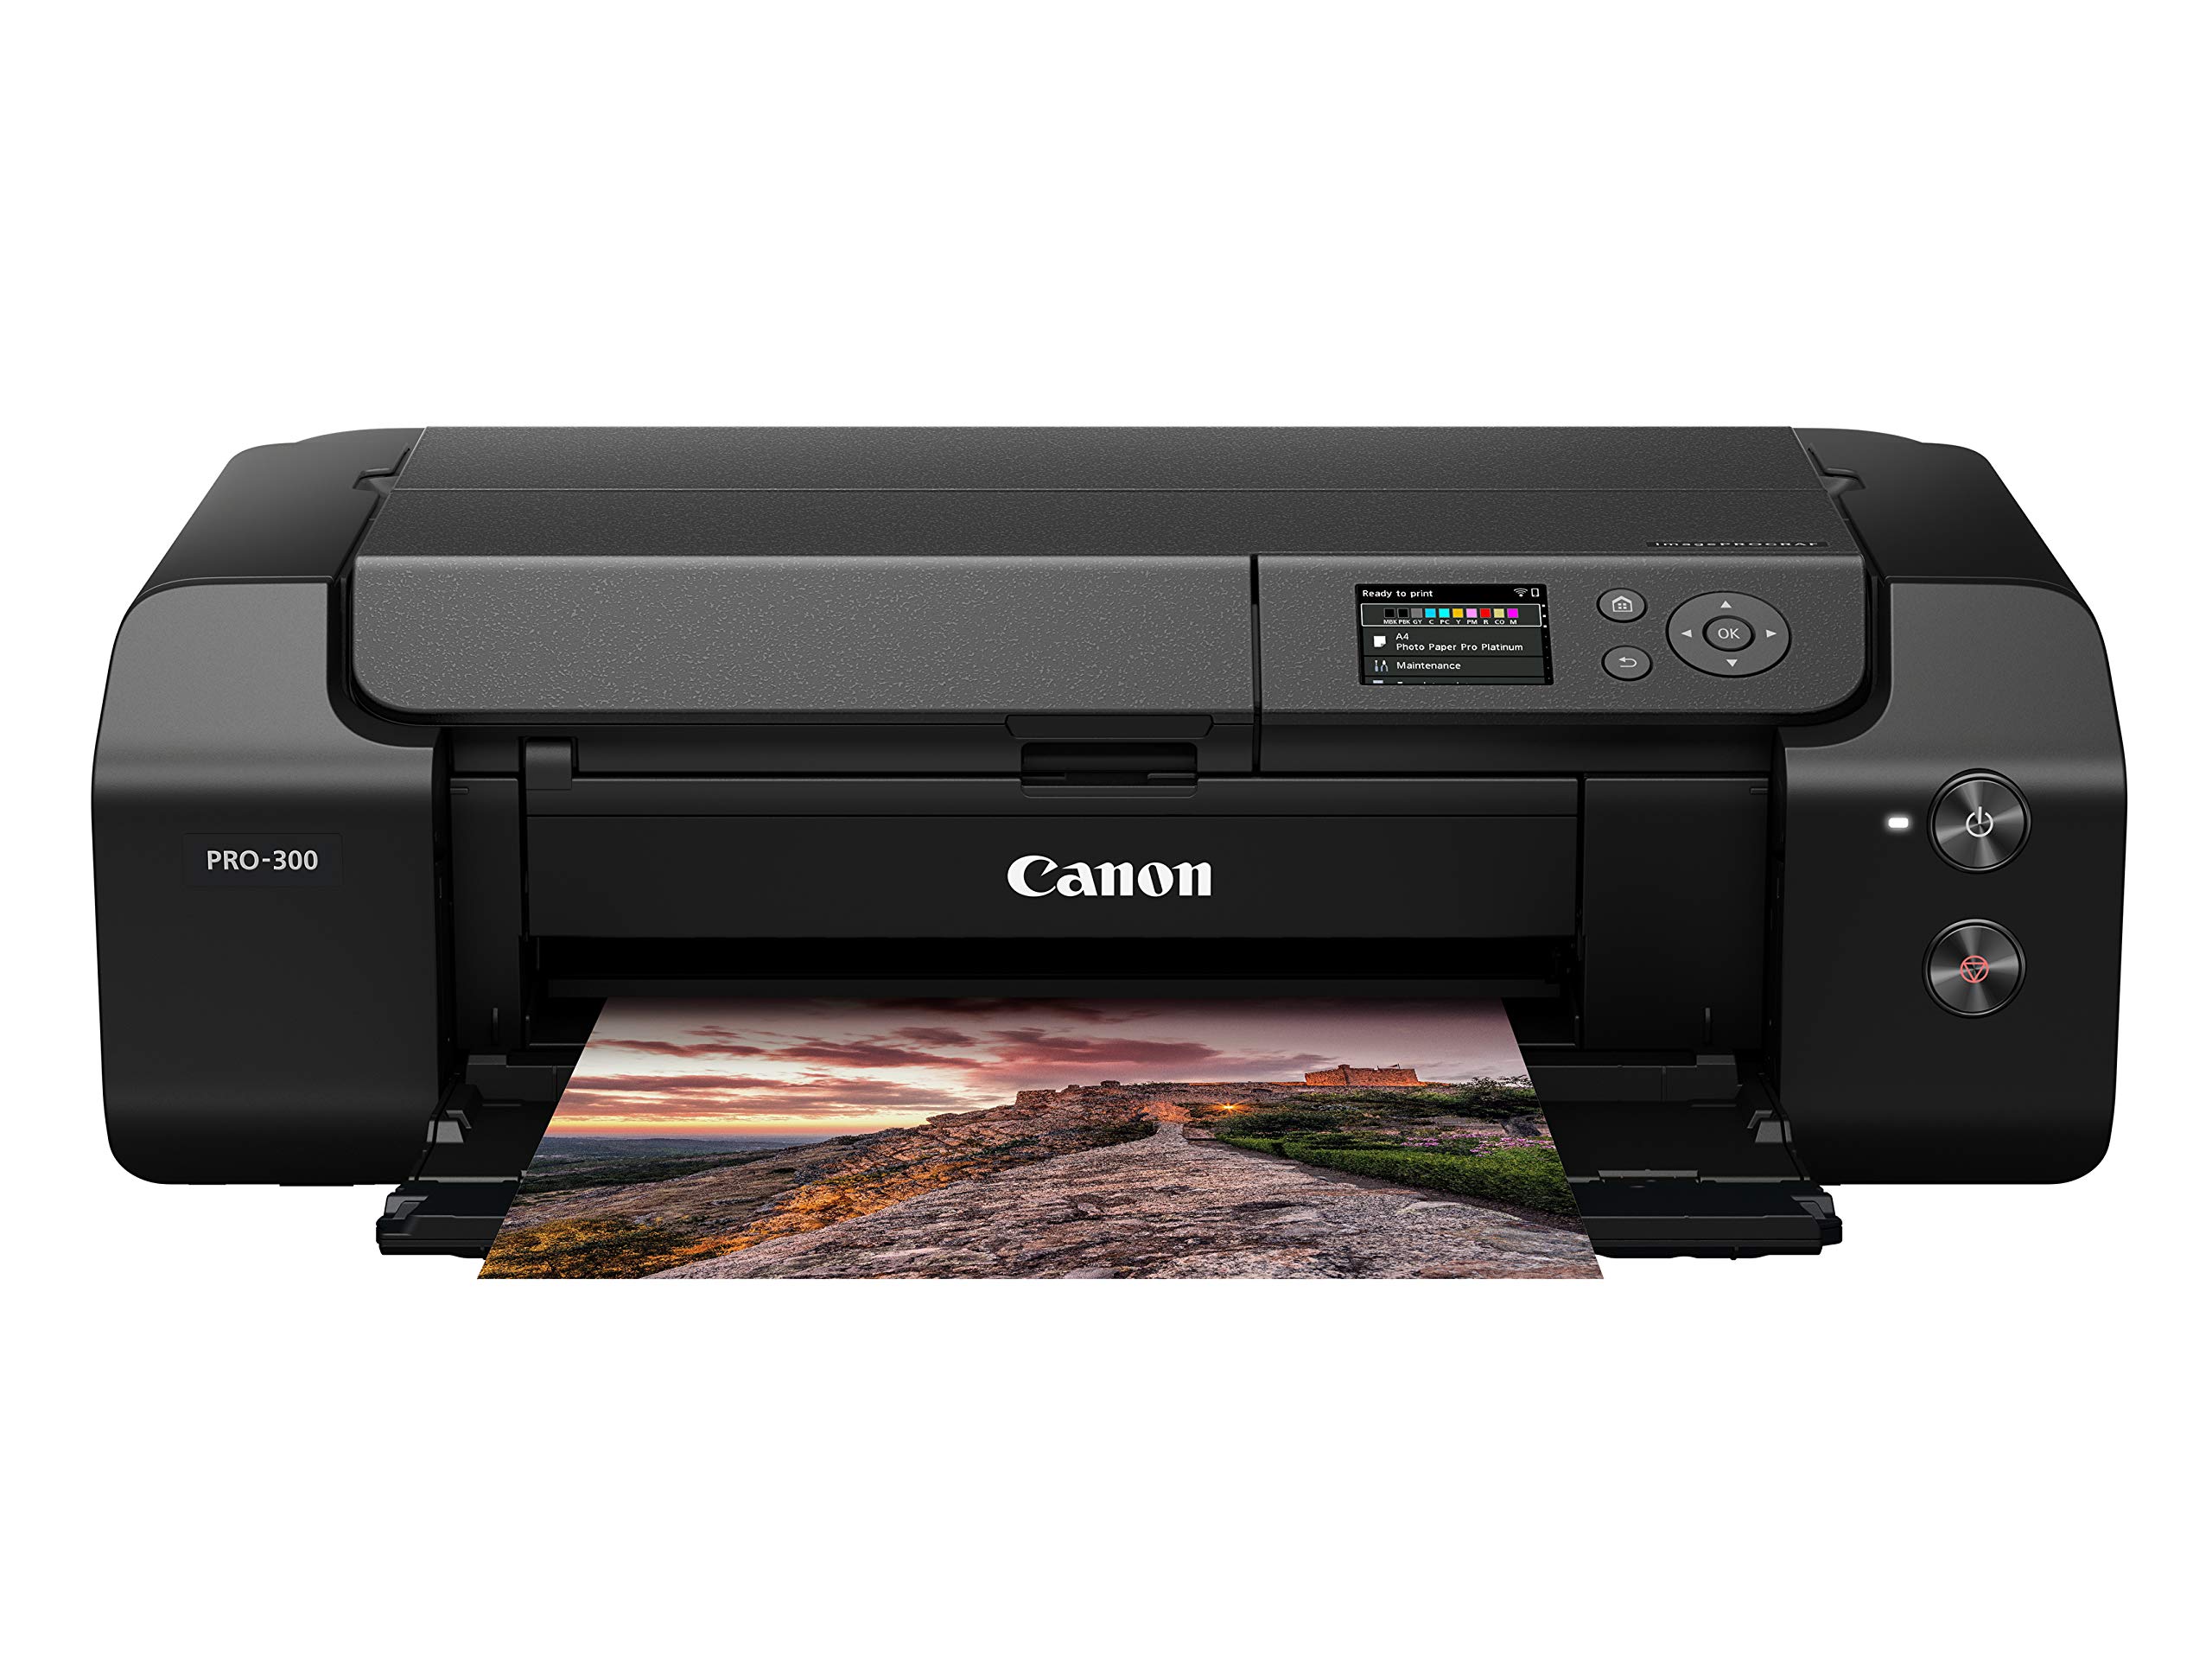  Canon imagePROGRAF PRO-300 ワイヤレス カラー ワイドフォーマット プリンタ、プロフェッショナル プリント & レイアウト ソフトウェアおよびモバイル...